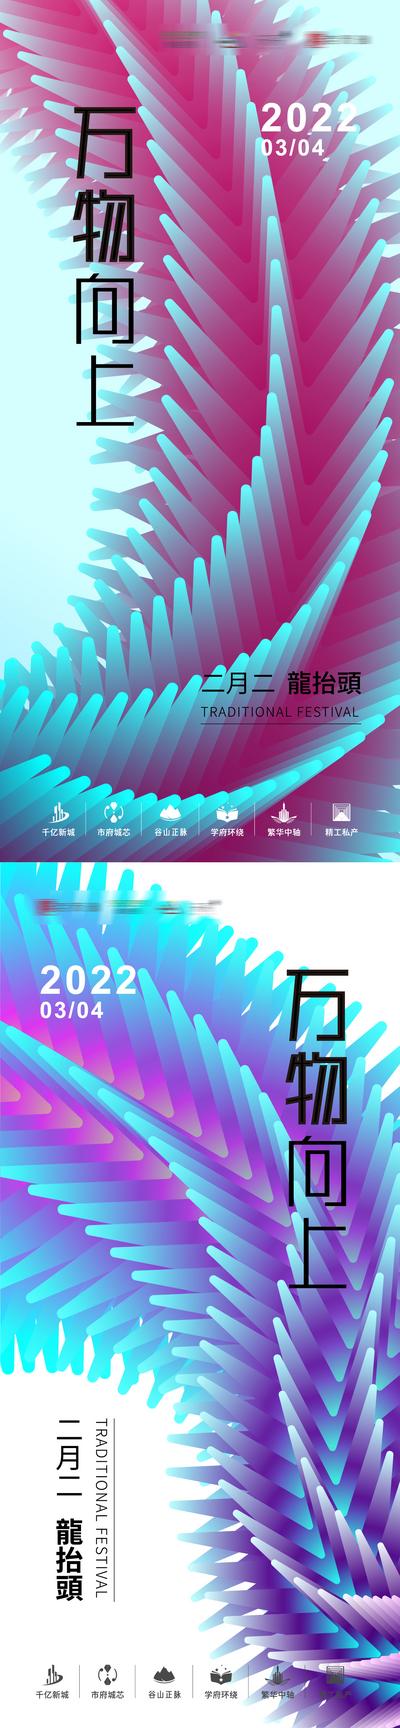 南门网 海报 房地产 中国传统节日 龙抬头 二月二 国潮 创意 纹龙 色彩 系列